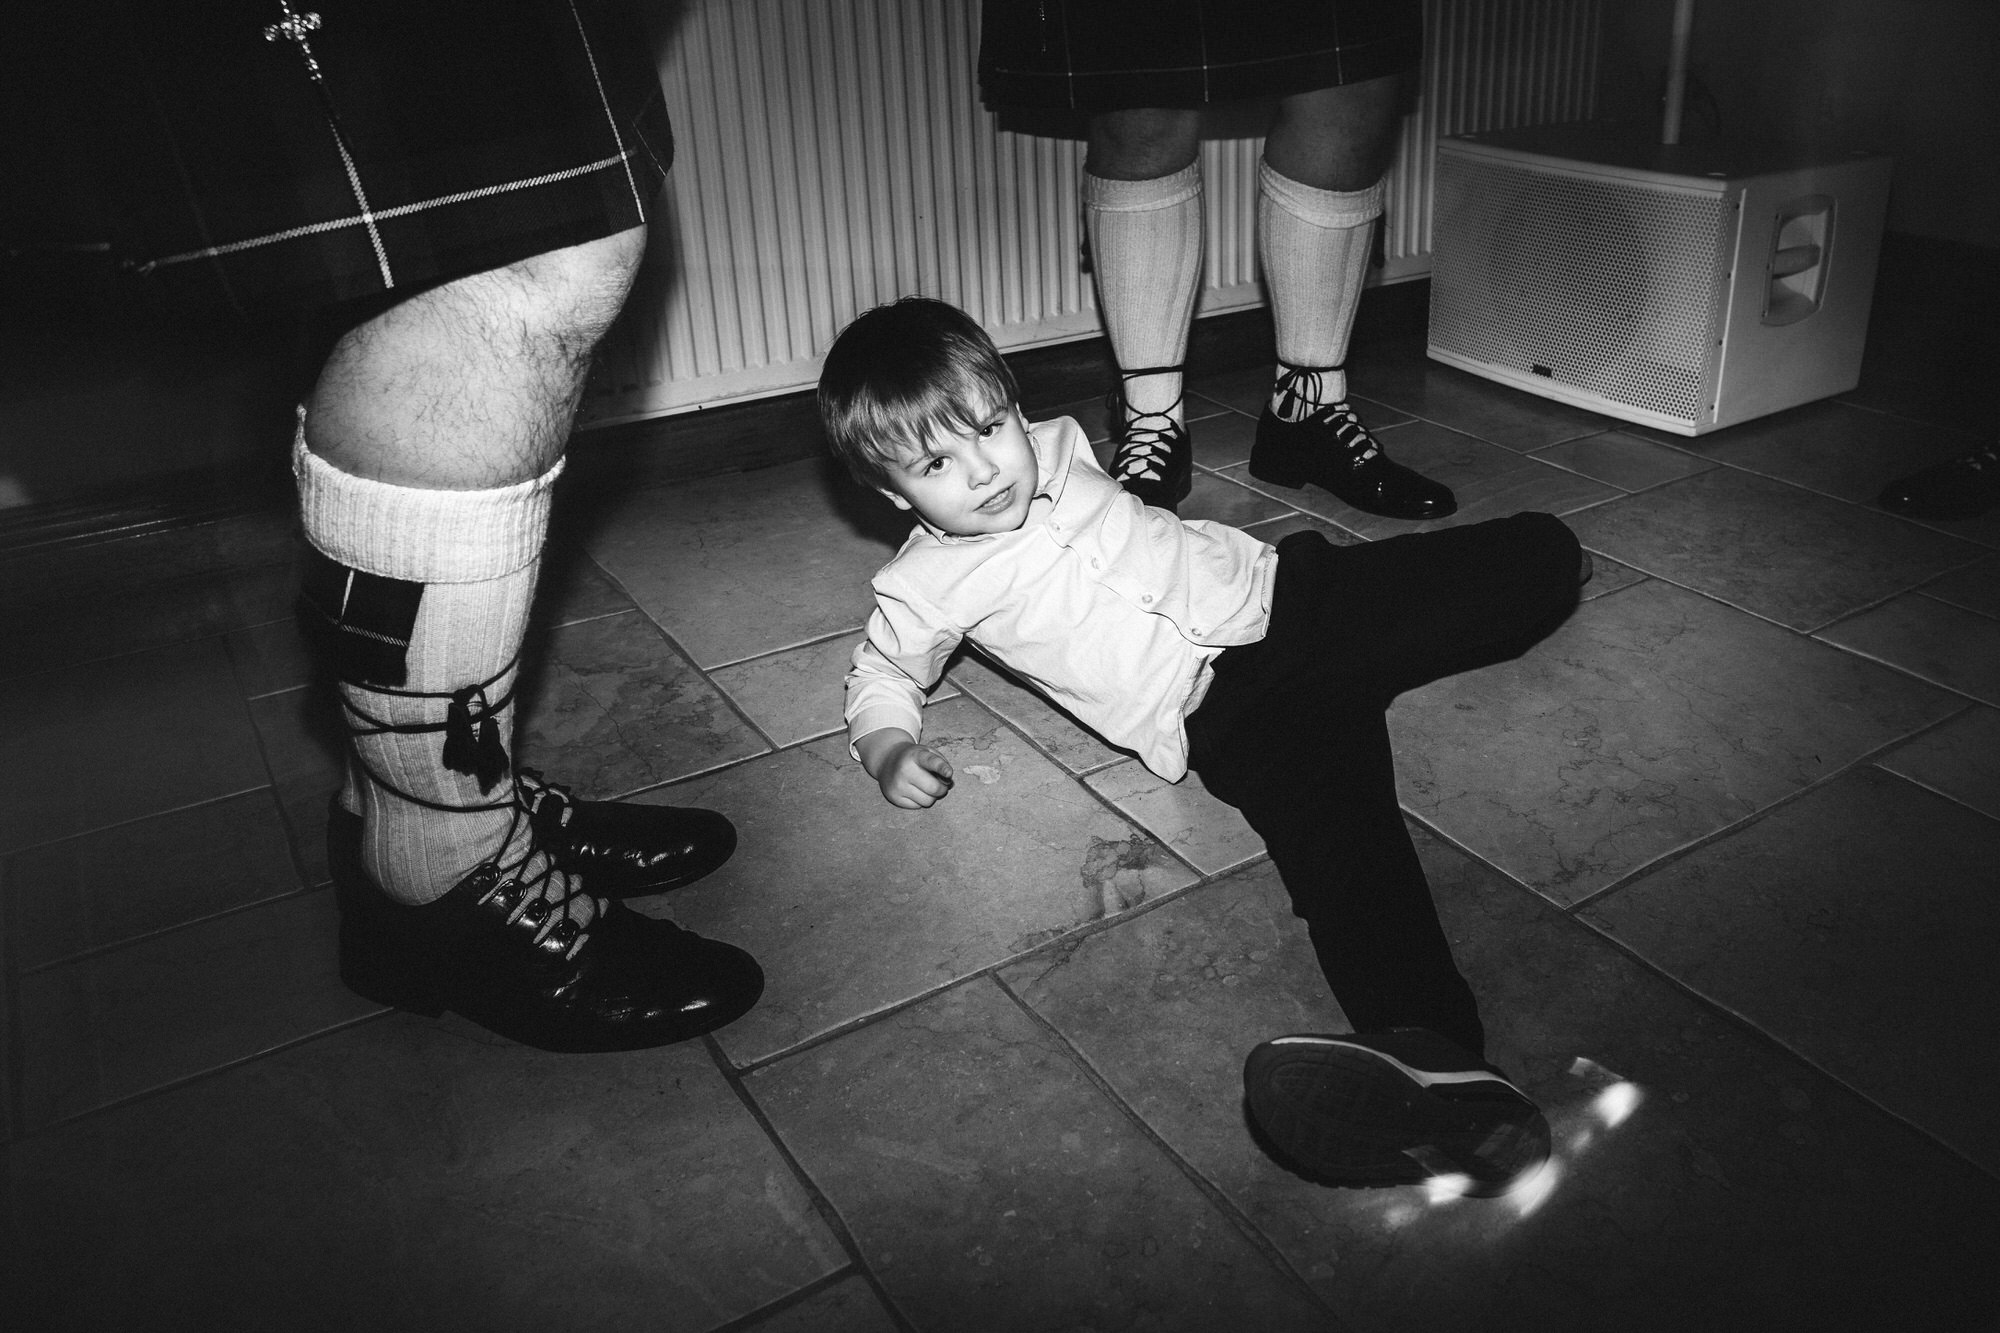 child on floor doing break dancing